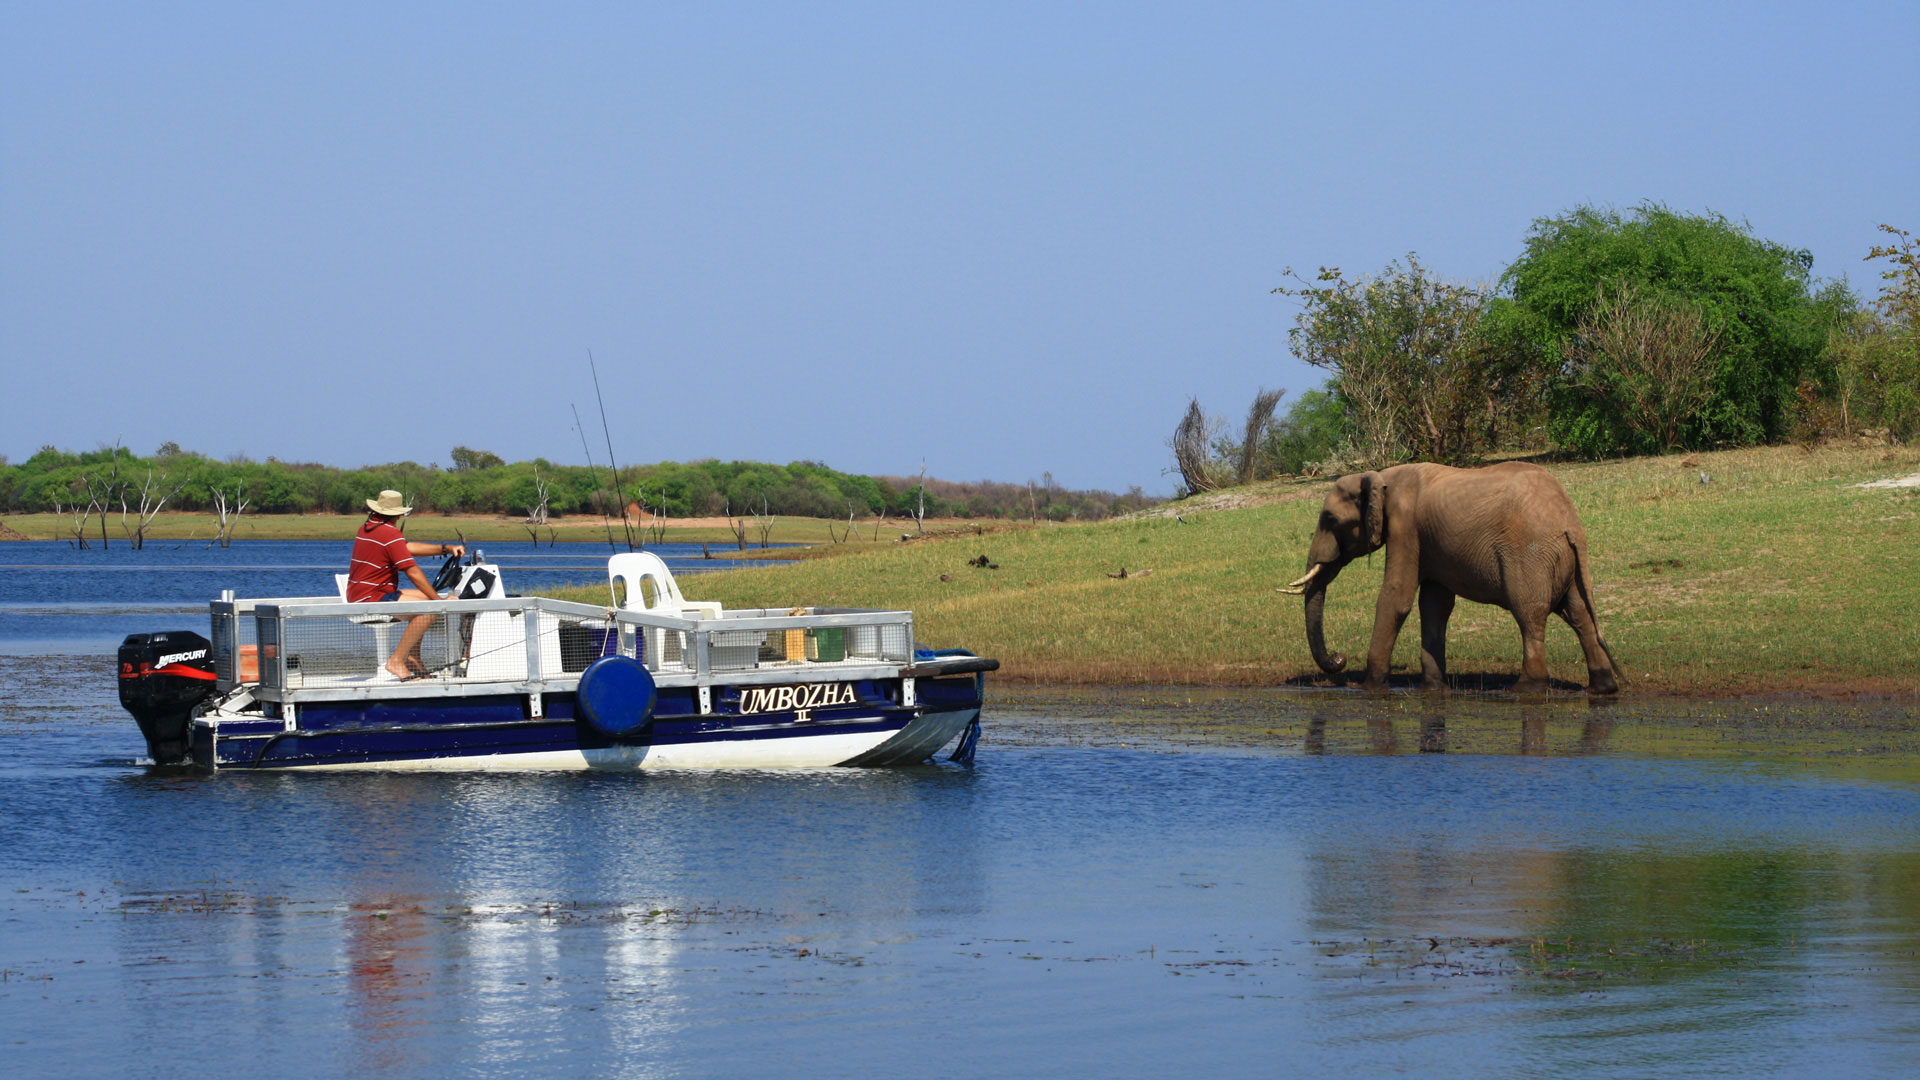 Ein Mensch beobachtet vom Boot aus einen Elefanten am Ufer